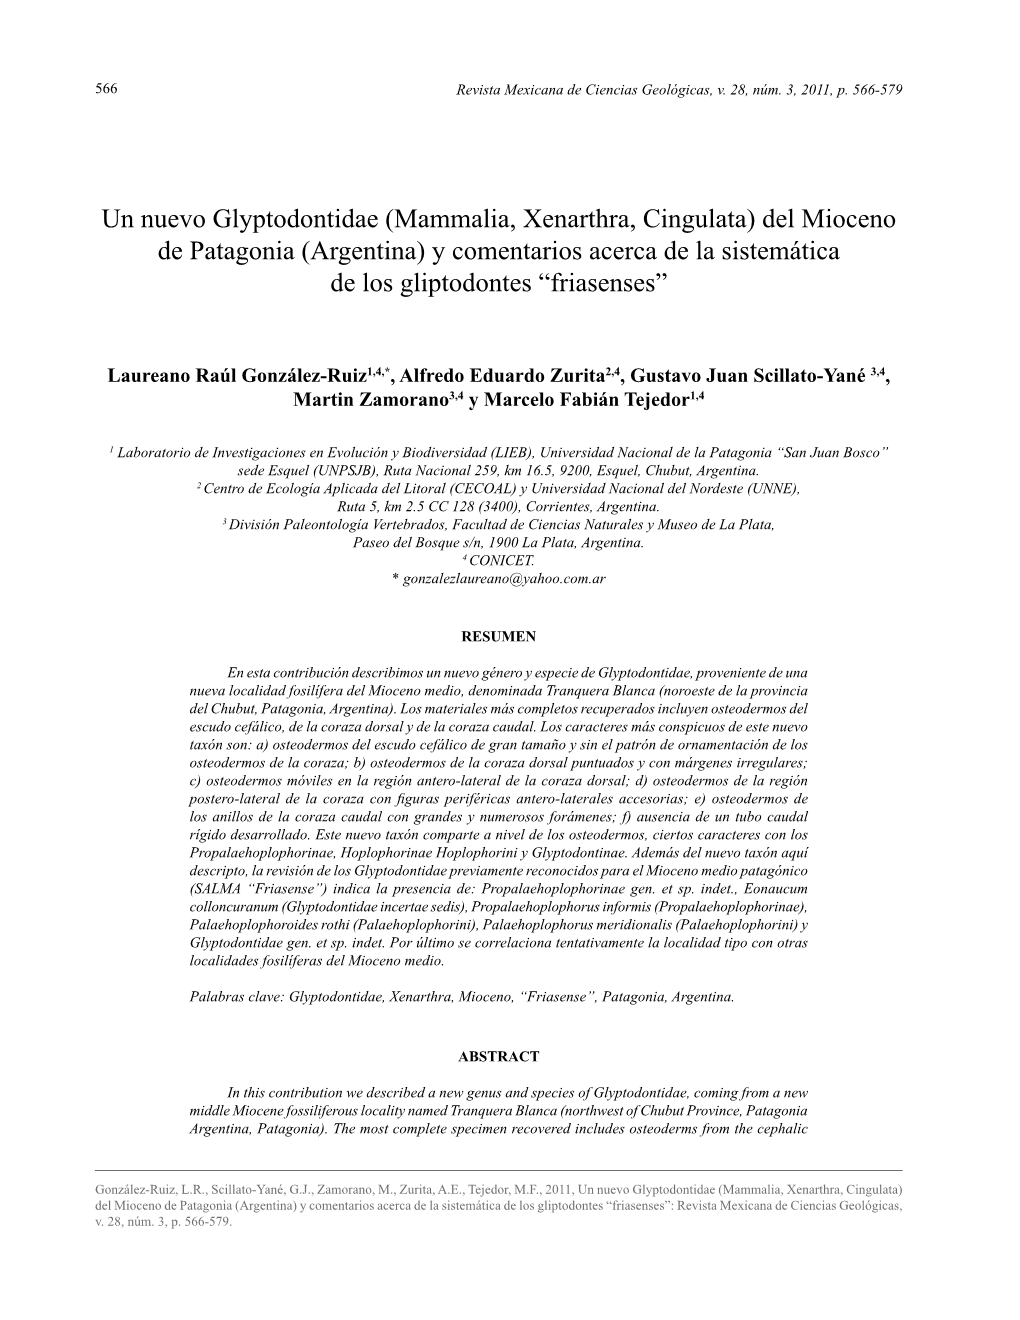 Mammalia, Xenarthra, Cingulata) Del Mioceno De Patagonia (Argentina) Y Comentarios Acerca De La Sistemática De Los Gliptodontes “Friasenses”